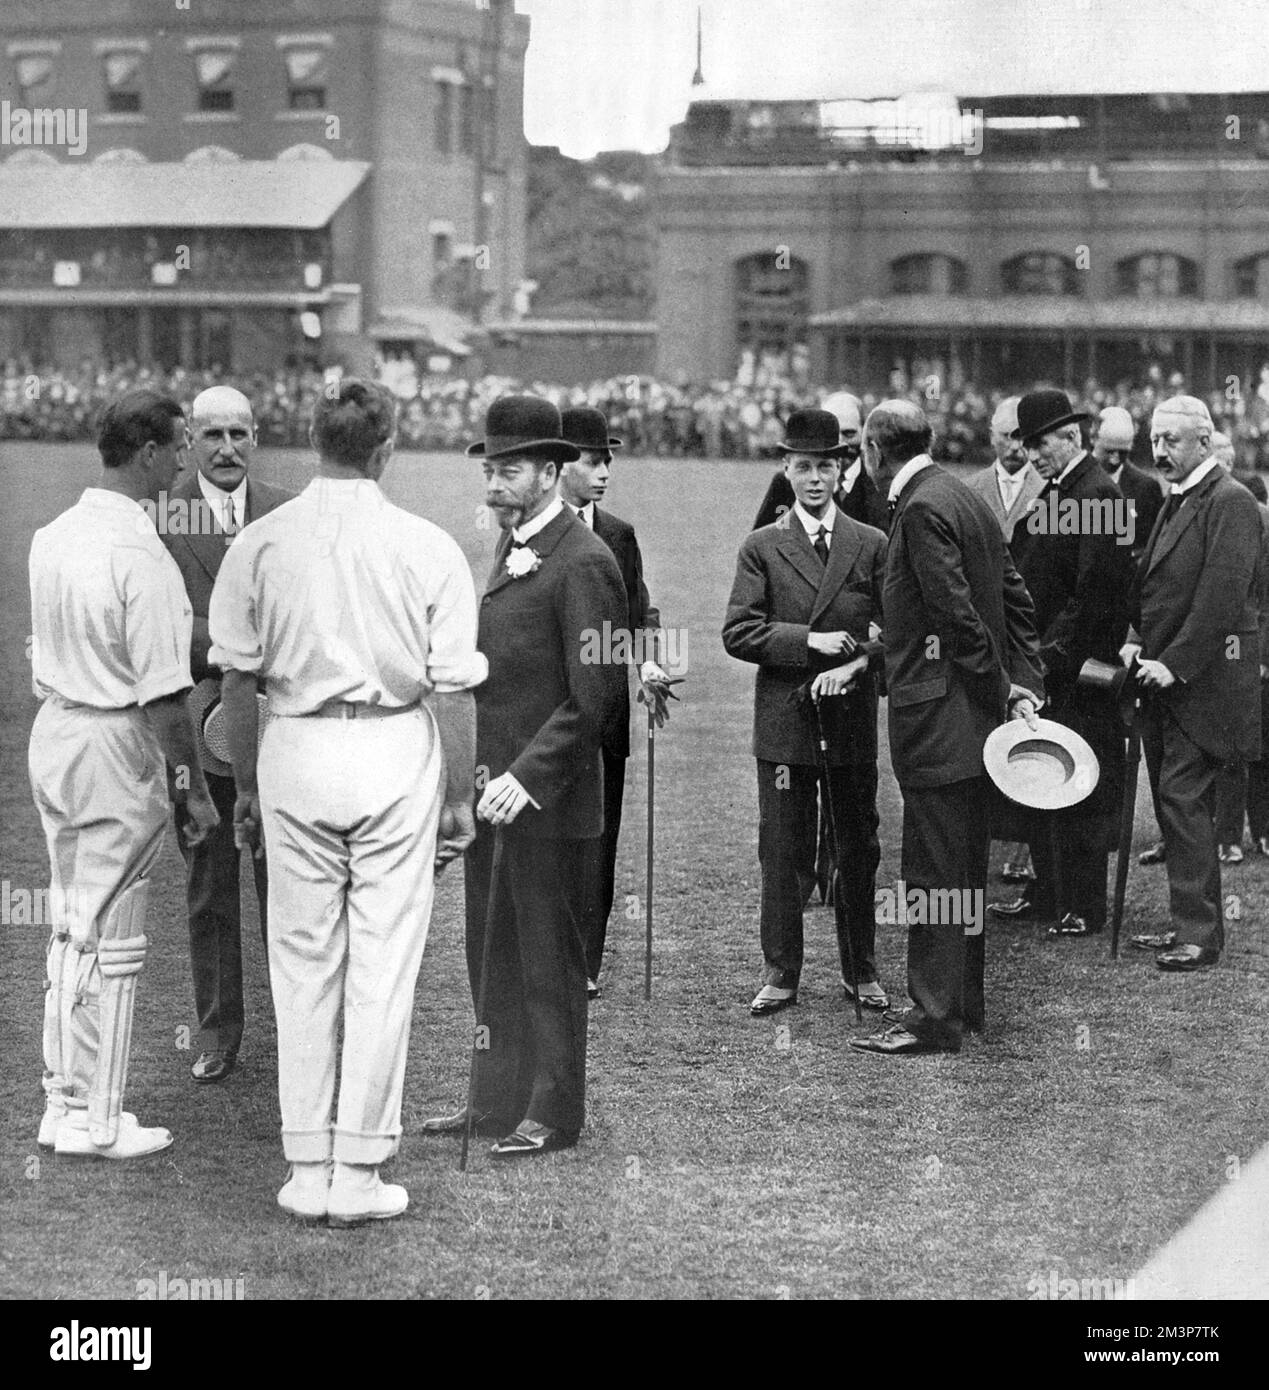 Re Giorgio V ed Edoardo, Principe di Galles (in seguito Re Edoardo VIII e poi Duca di Windsor), nella foto di Lord's Cricket Ground, dove il suo centenario fu celebrato nel giugno 1914. L'occasione è stata segnata da una partita tra M.C.C. Eroi sudafricani e il resto dell'Inghilterra. Il re è raffigurato chiacchierando con i sigg. C. B. Fry, Johnny Douglas e Lord Hawke. Il principe Alberto (in seguito re Giorgio VI) è visto proprio dietro il re, e il principe del Galles sta parlando con il signor F. E. Lacey. Sulla destra si trovano Sir C. Cust e il Duca di Devonshire. Data: 1914 Foto Stock